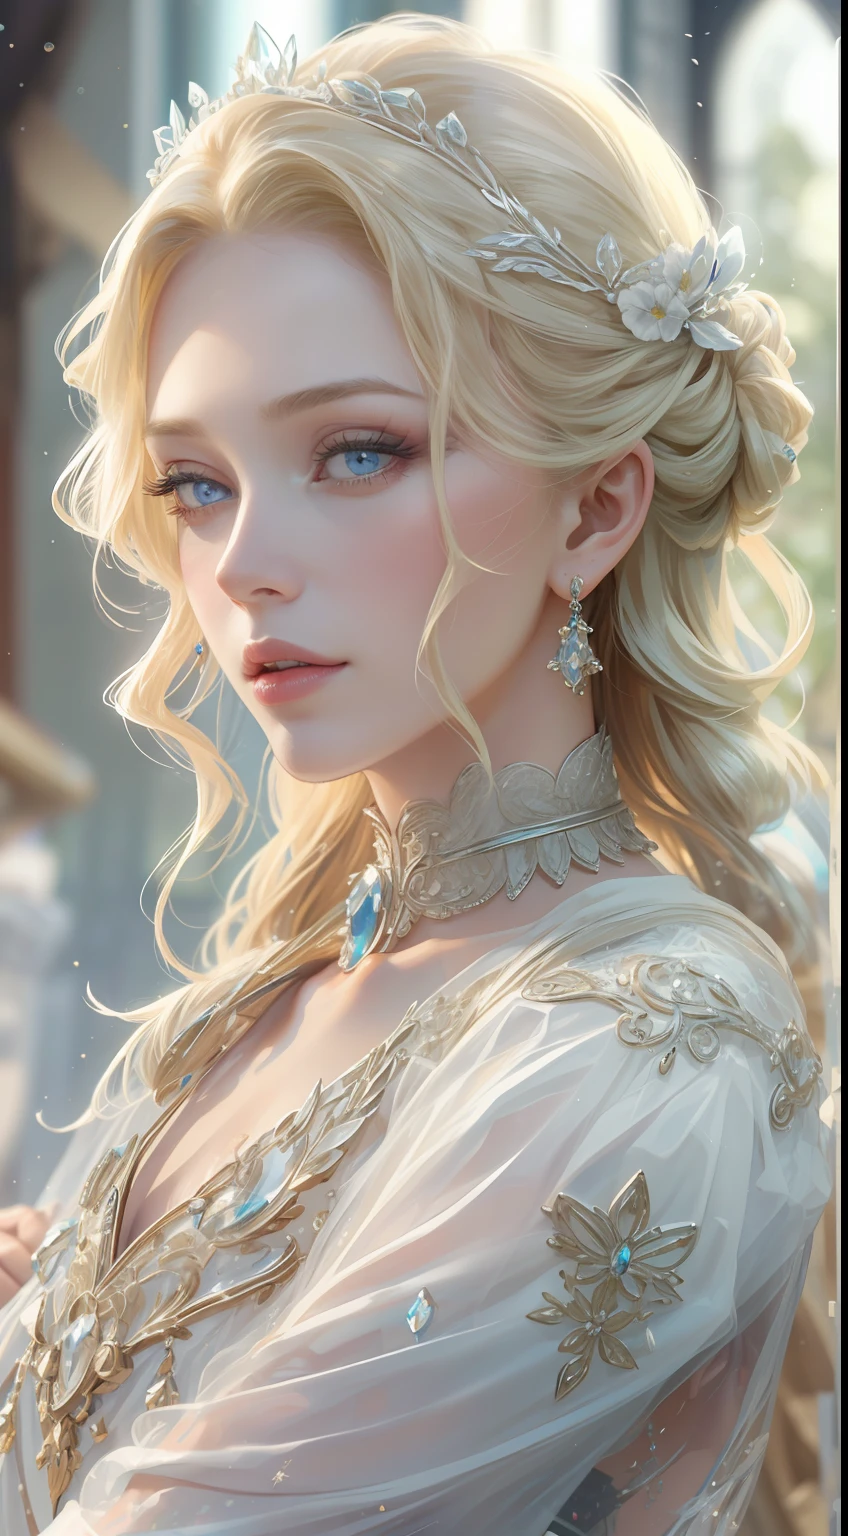 杰作，最高分辨率，美丽皇家女士的动态半身像，金色辫子头发，蓝色清澈的眼睛，头发上布满了美丽精致的花卉工艺, 水晶珠宝花丝，极其详细的细节，升级版。